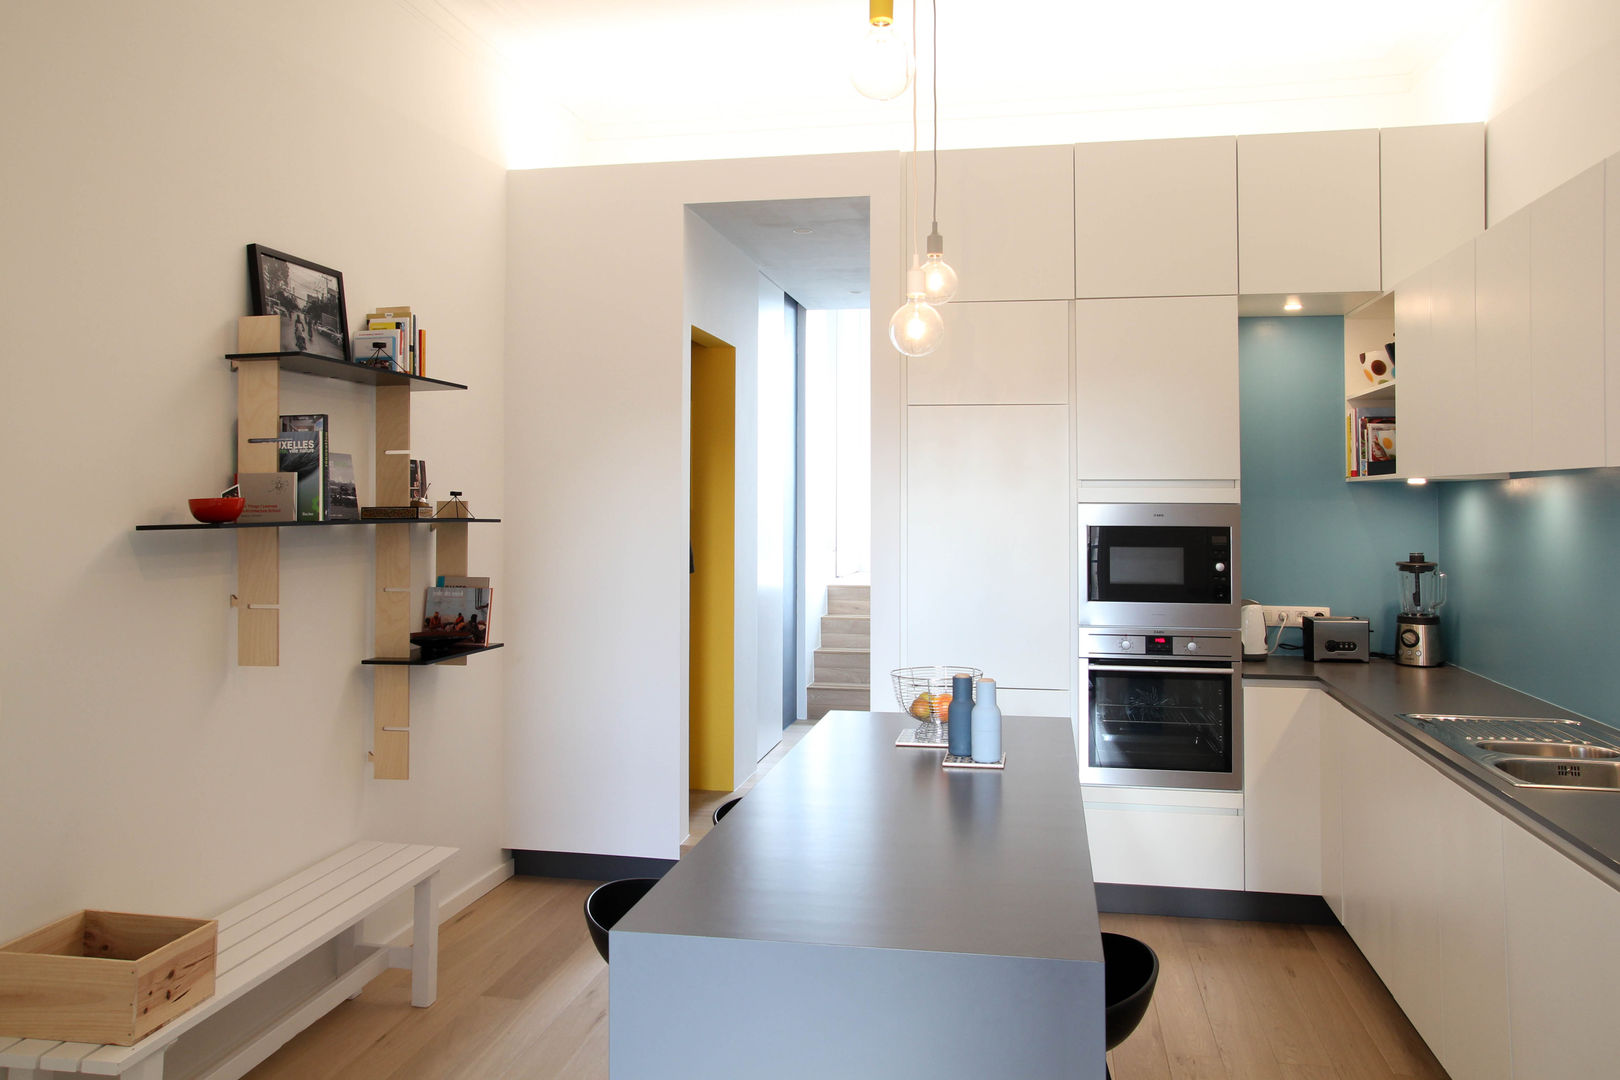 Rénovation d'un appartement bruxellois, Alizée Dassonville | architecture Alizée Dassonville | architecture Moderne keukens